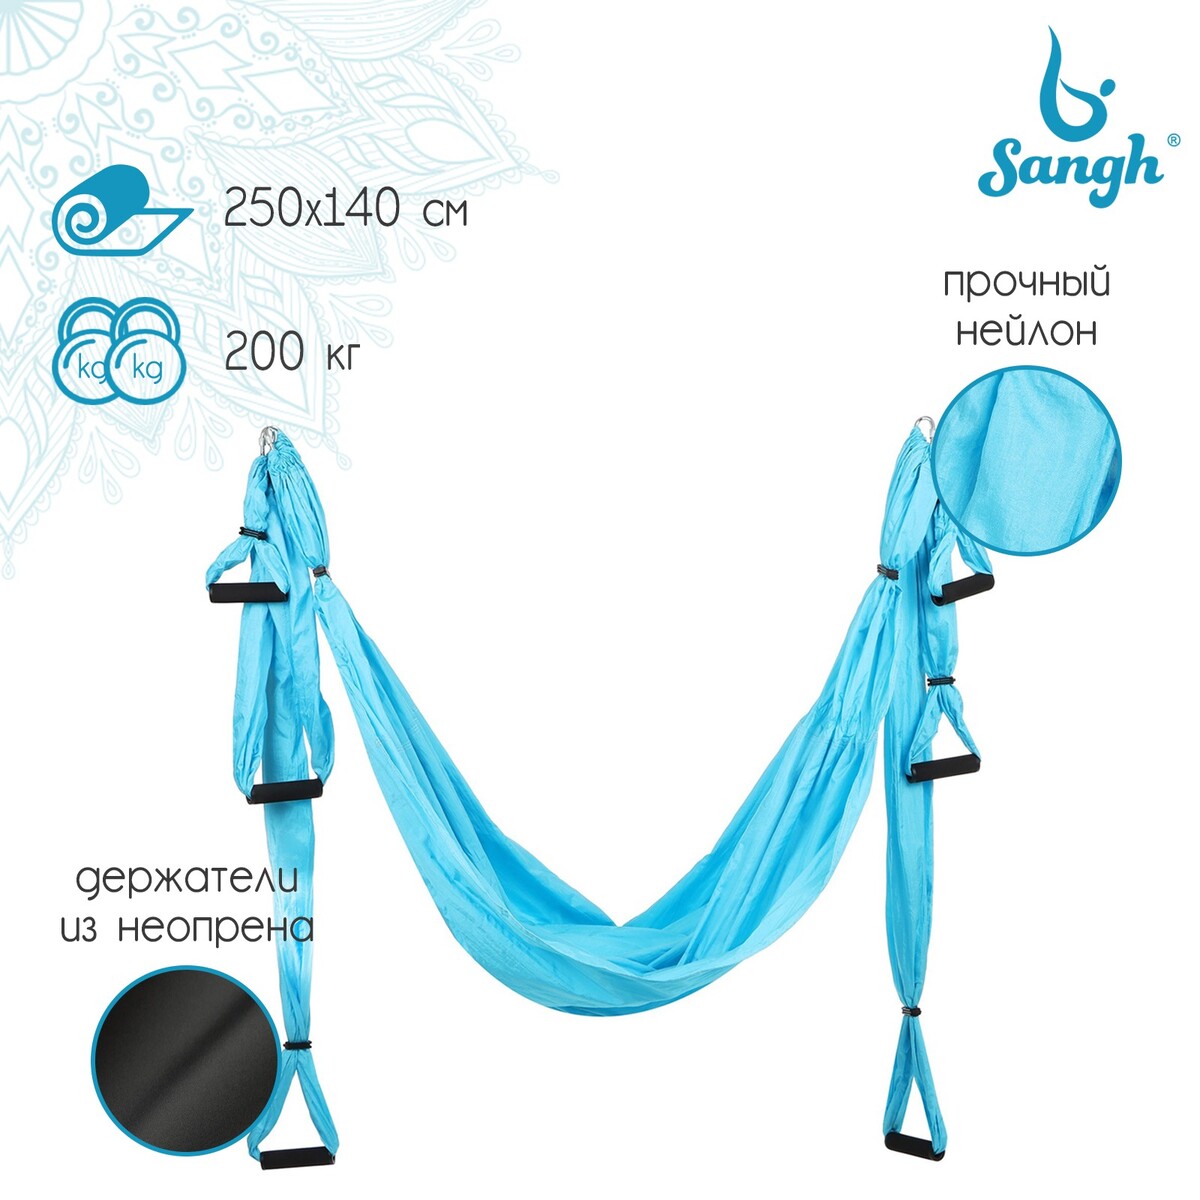 Гамак для йоги sangh, 250×140 см, цвет голубой гамак для йоги sangh 250×140 см чёрный